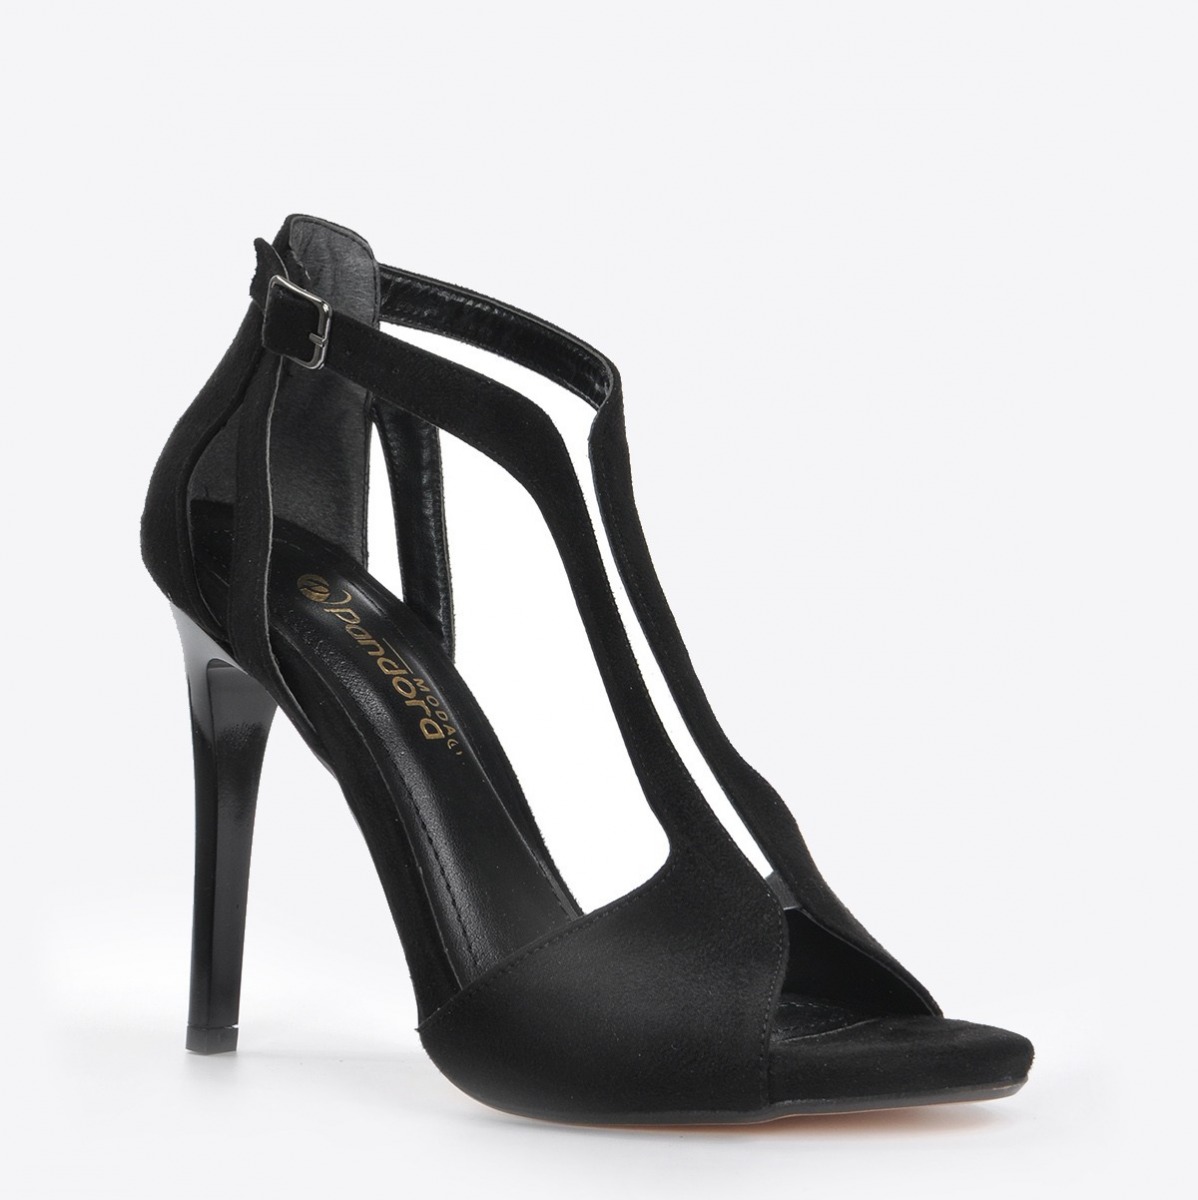 Flo Kadın Siyah Süet Klasik Topuklu Ayakkabı VZN20-178Y. 3